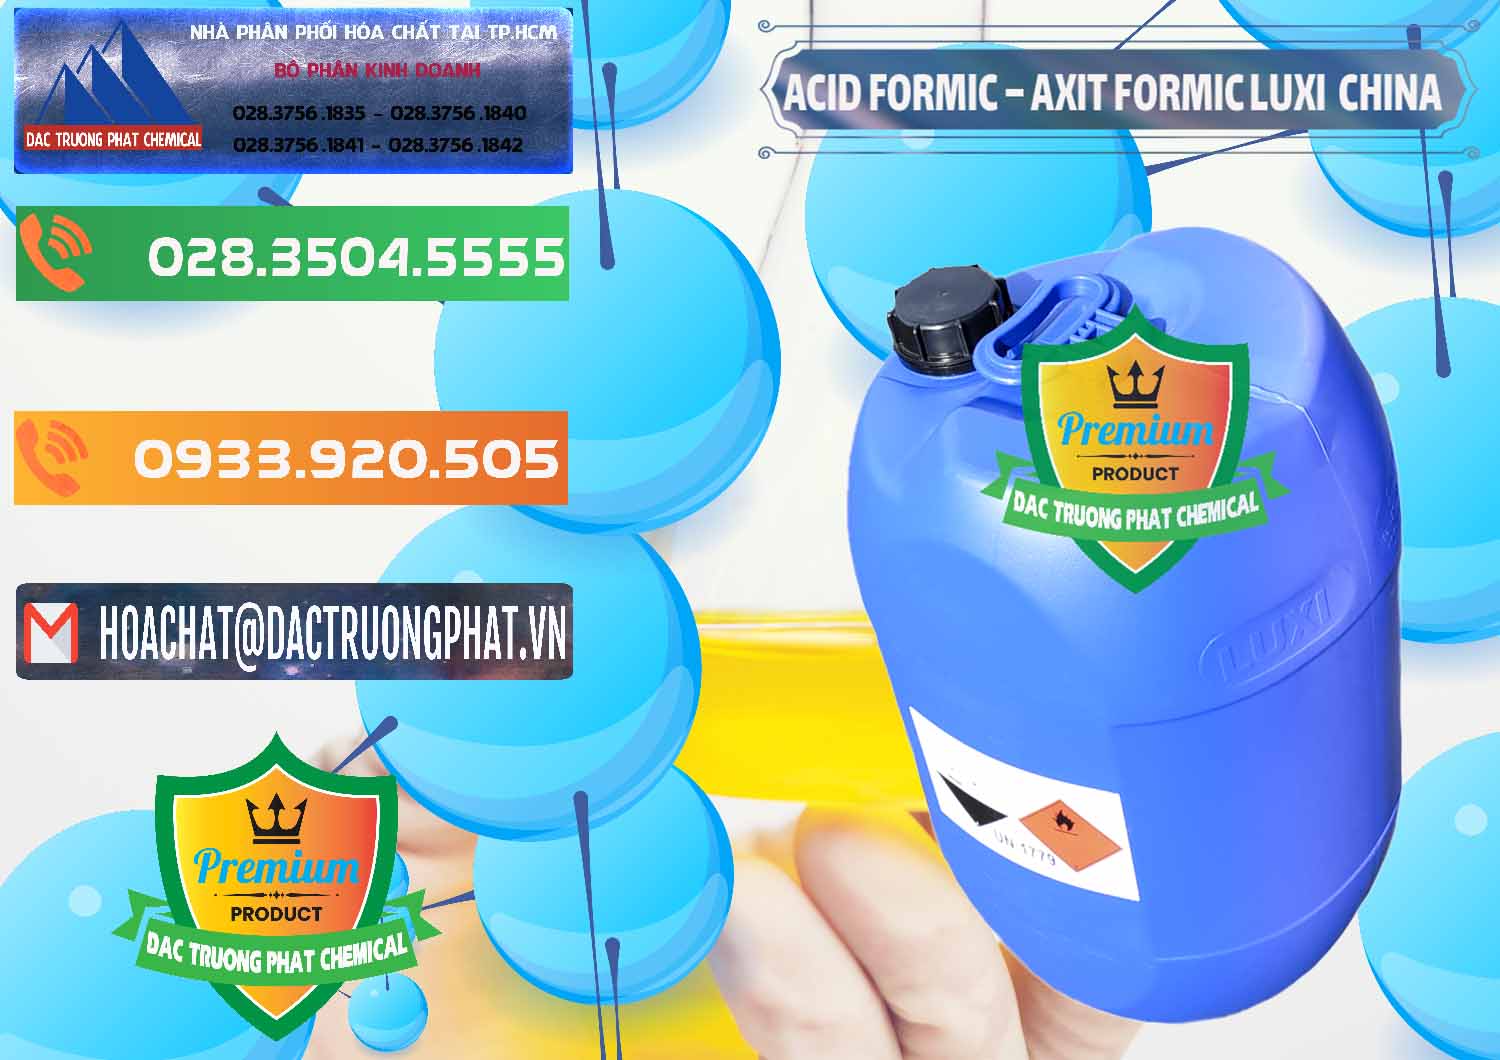 Cty bán ( phân phối ) Acid Formic - Axit Formic Luxi Trung Quốc China - 0029 - Công ty kinh doanh ( phân phối ) hóa chất tại TP.HCM - hoachatxulynuoc.com.vn